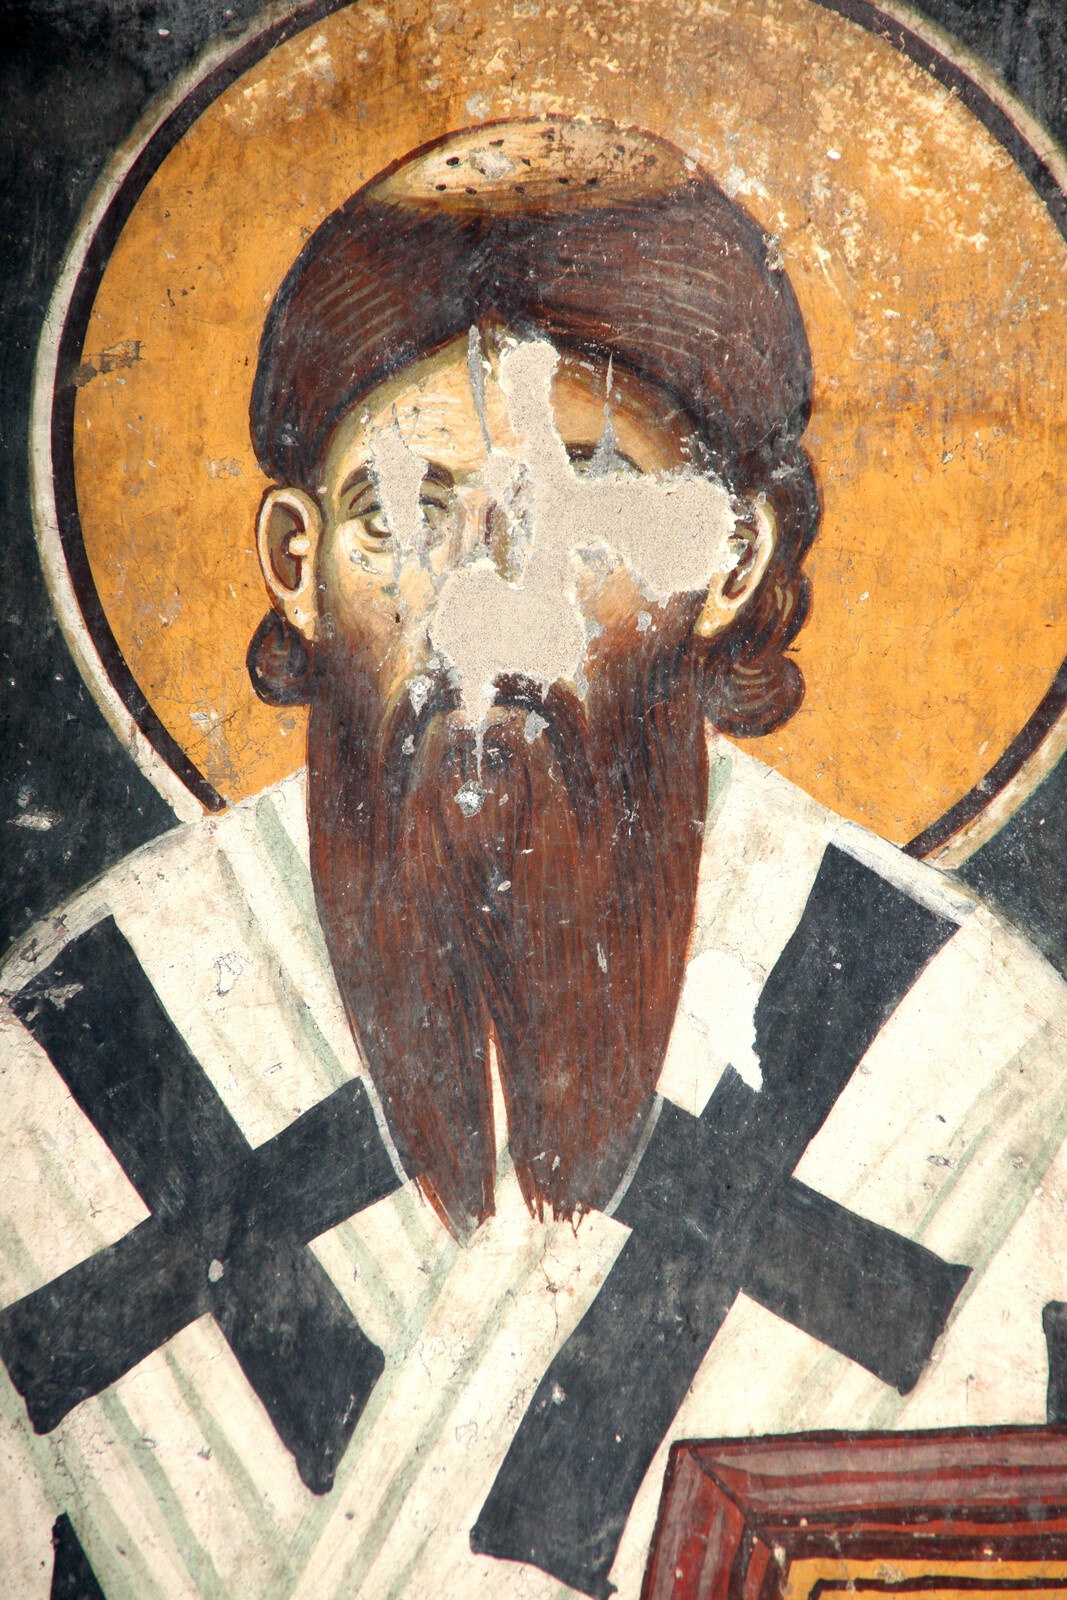 Eustathios II - archbishop of Serbia, detail